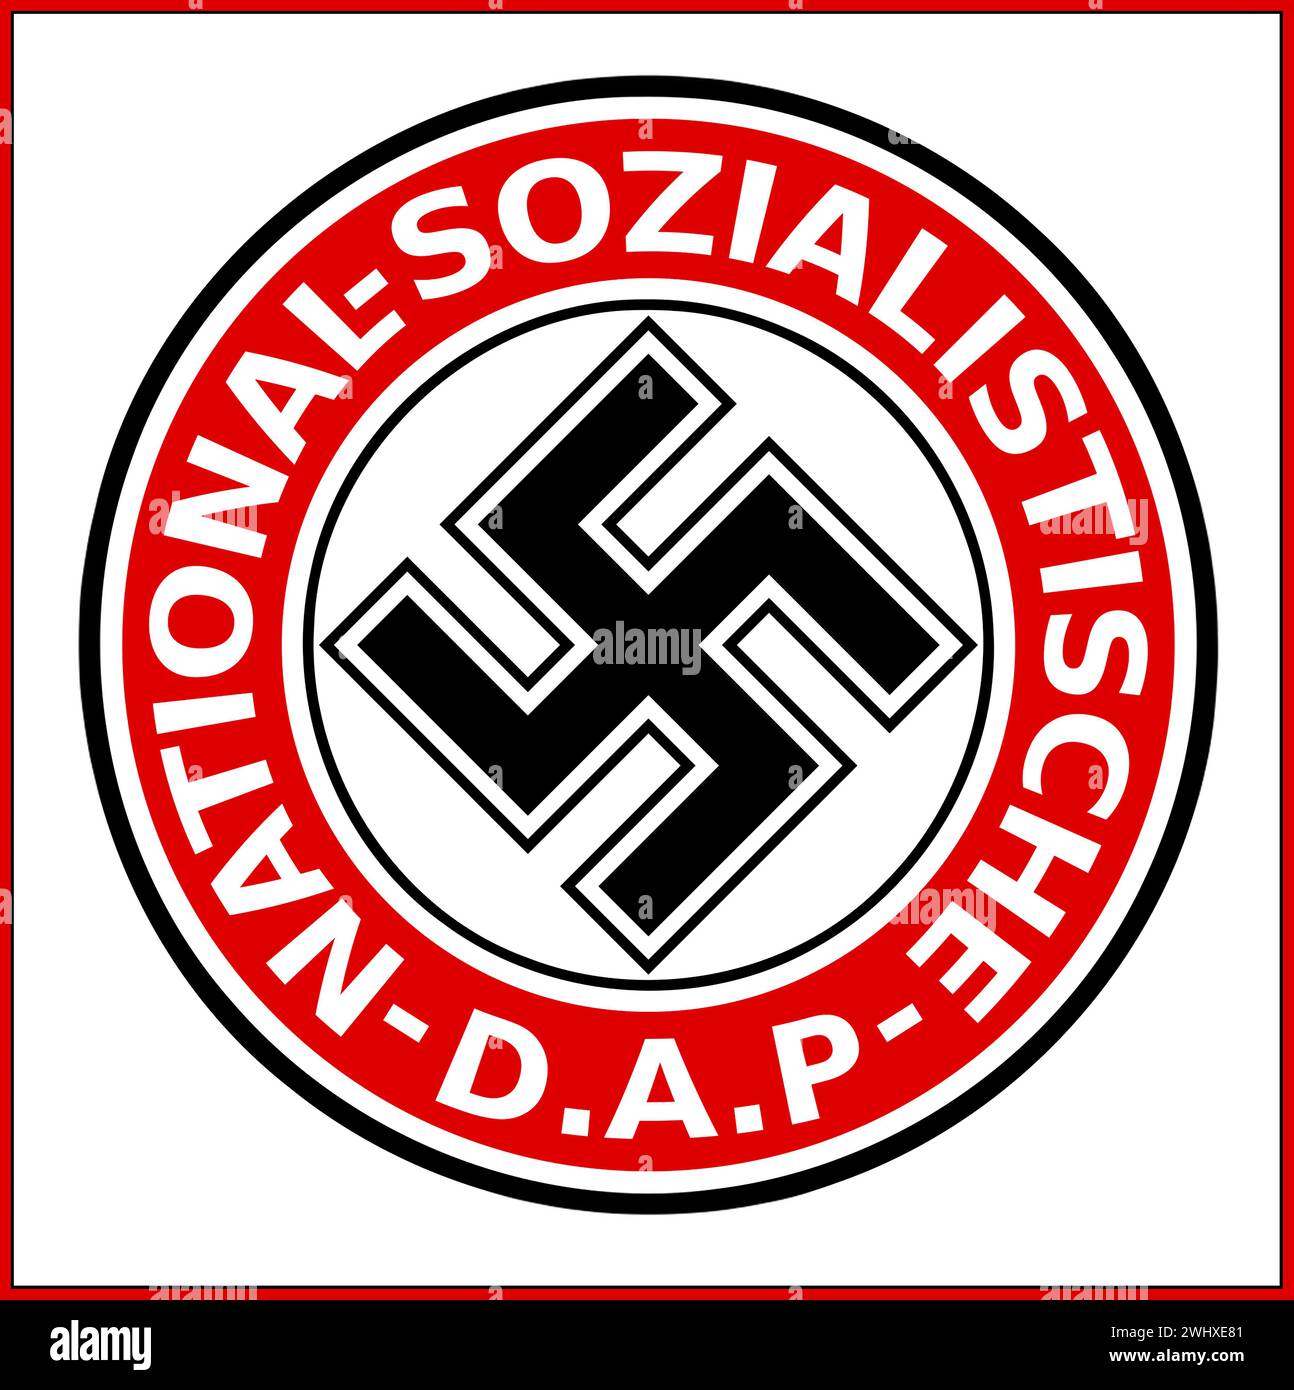 IL LOGO NSDAP ufficialmente il Partito Nazionalsocialista tedesco dei lavoratori (Nationalsozialistische Deutsche Arbeiterpartei o NSDAP), è stato un partito politico di estrema destra in Germania attivo tra il 1920 e il 1945 che ha creato e sostenuto l'ideologia del nazismo. Foto Stock